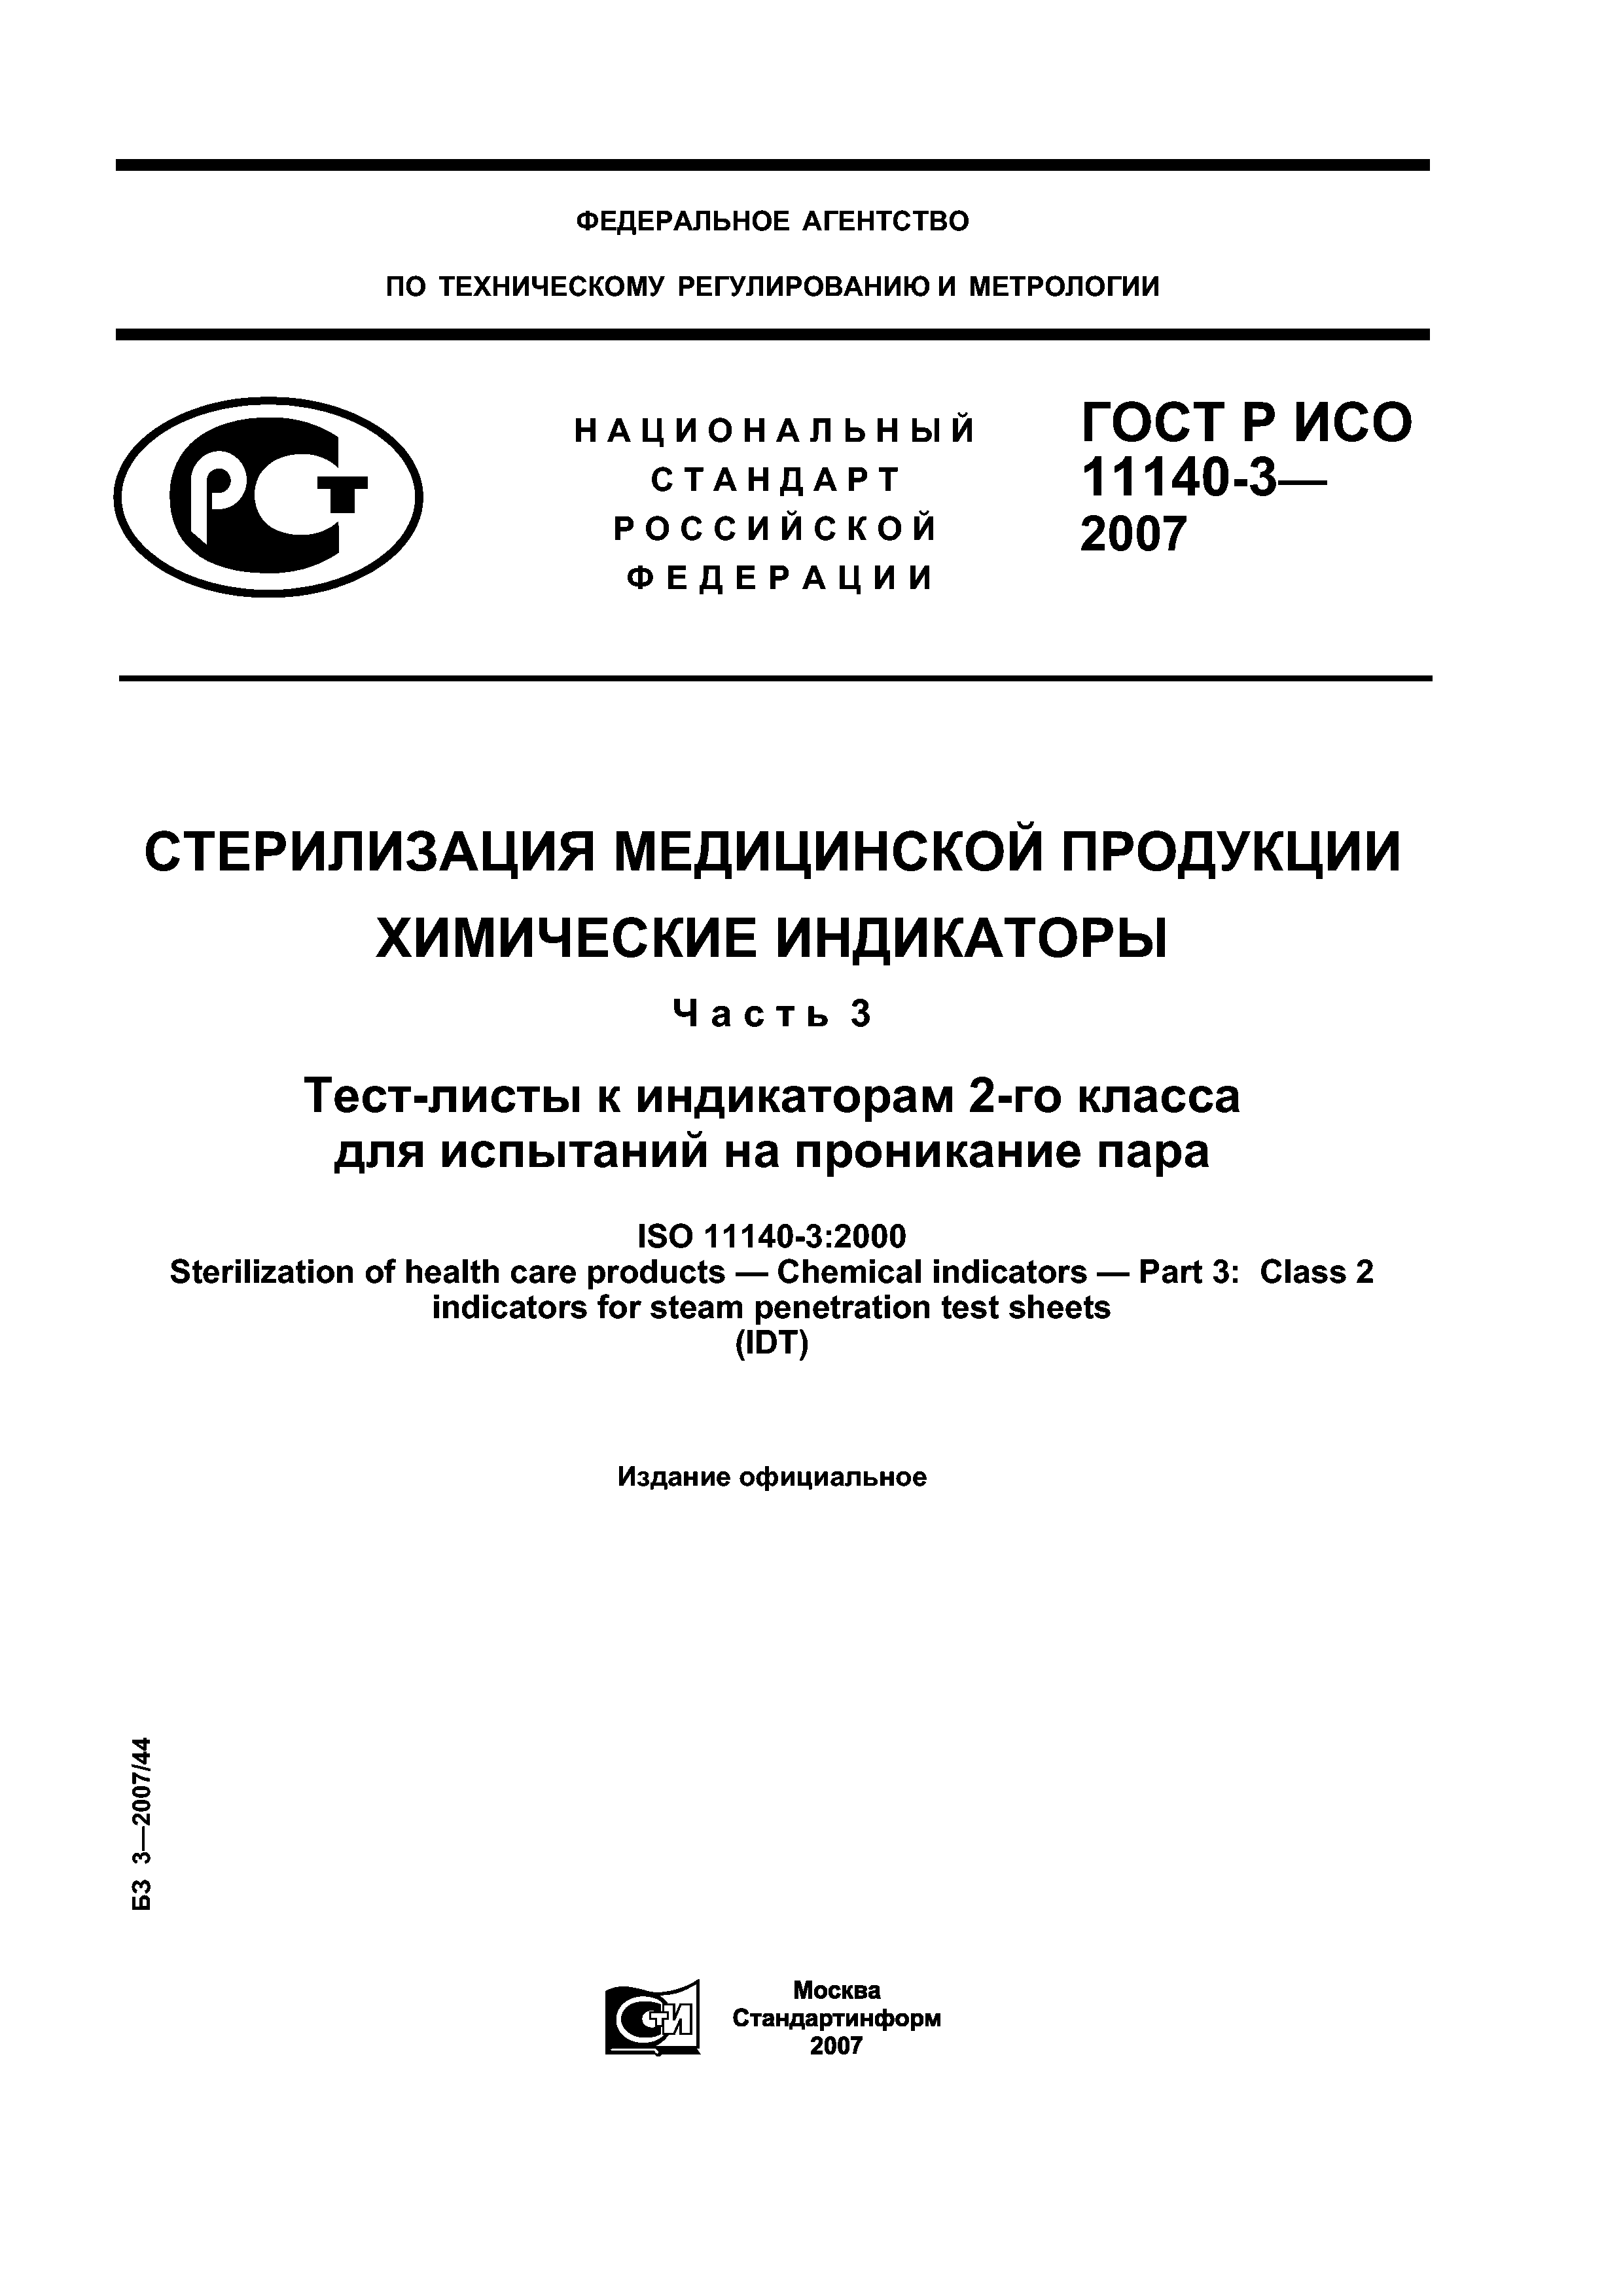 ГОСТ Р ИСО 11140-3-2007